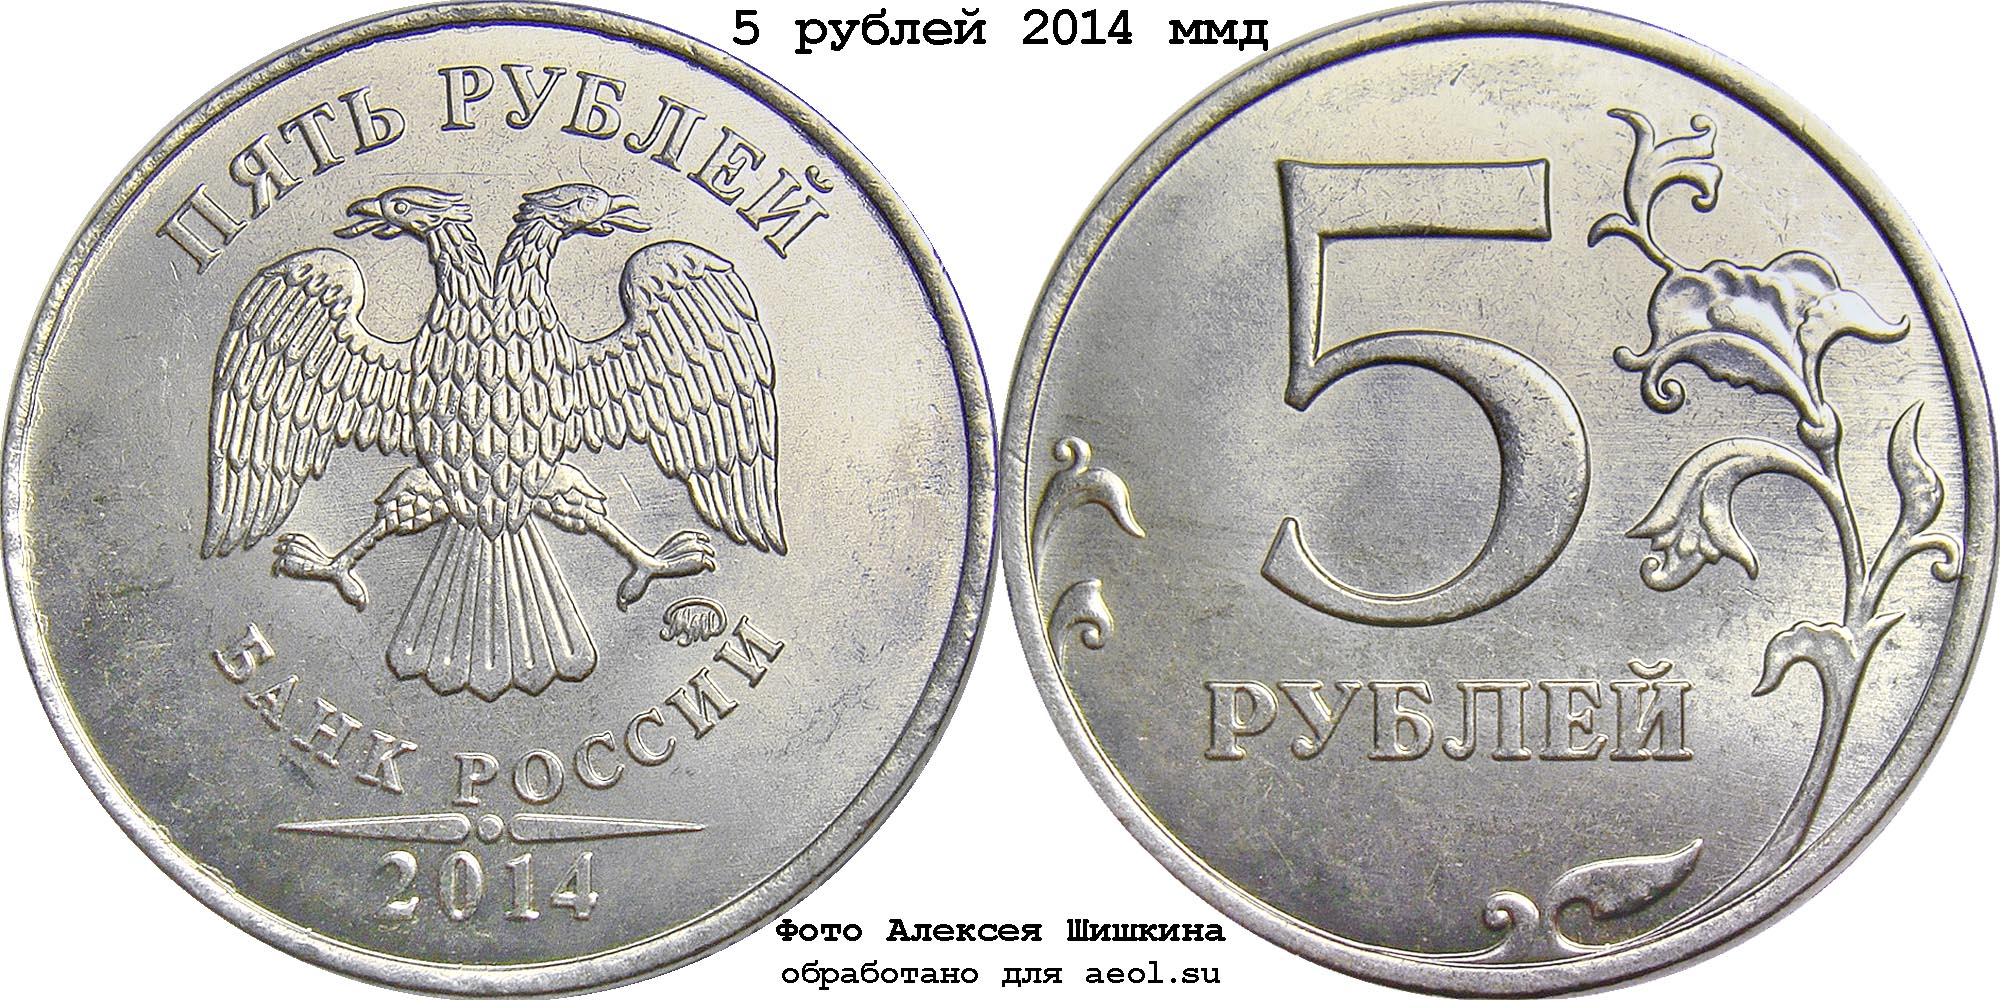 Монеты достоинством 1 рубль для детей